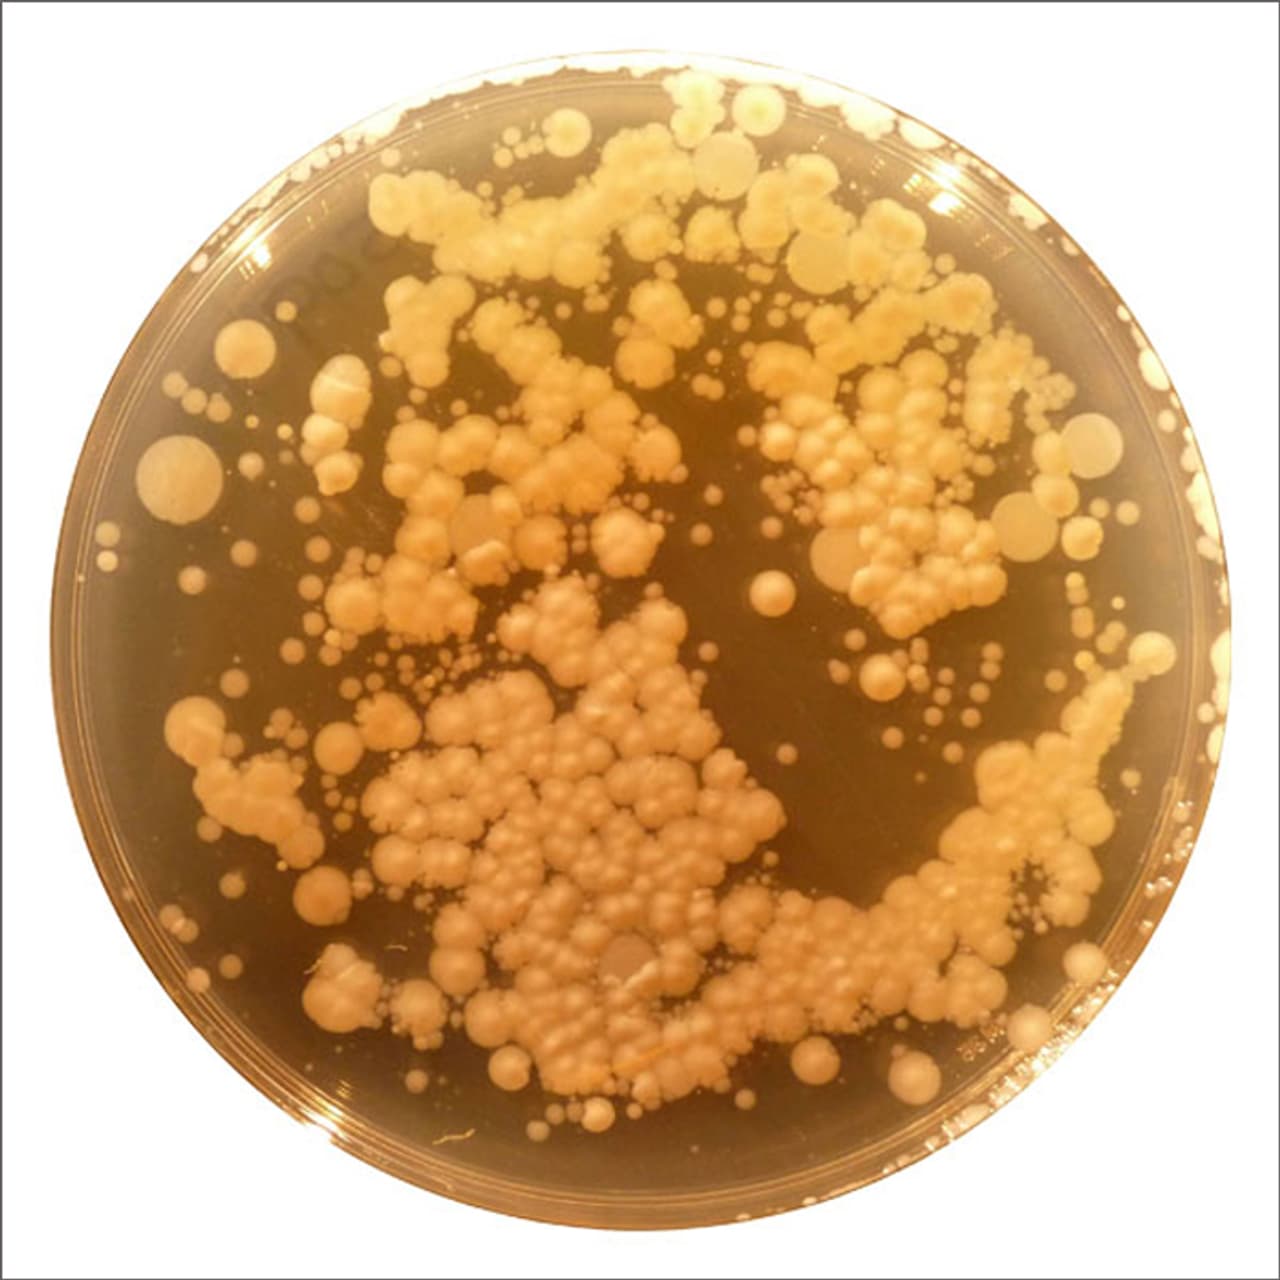 1 staphylococcus aureus. S. aureus золотистый стафилококк. Золотушный стафилококк. Золотистый стафилококк илококк. Staphylococcus aureus [2]..